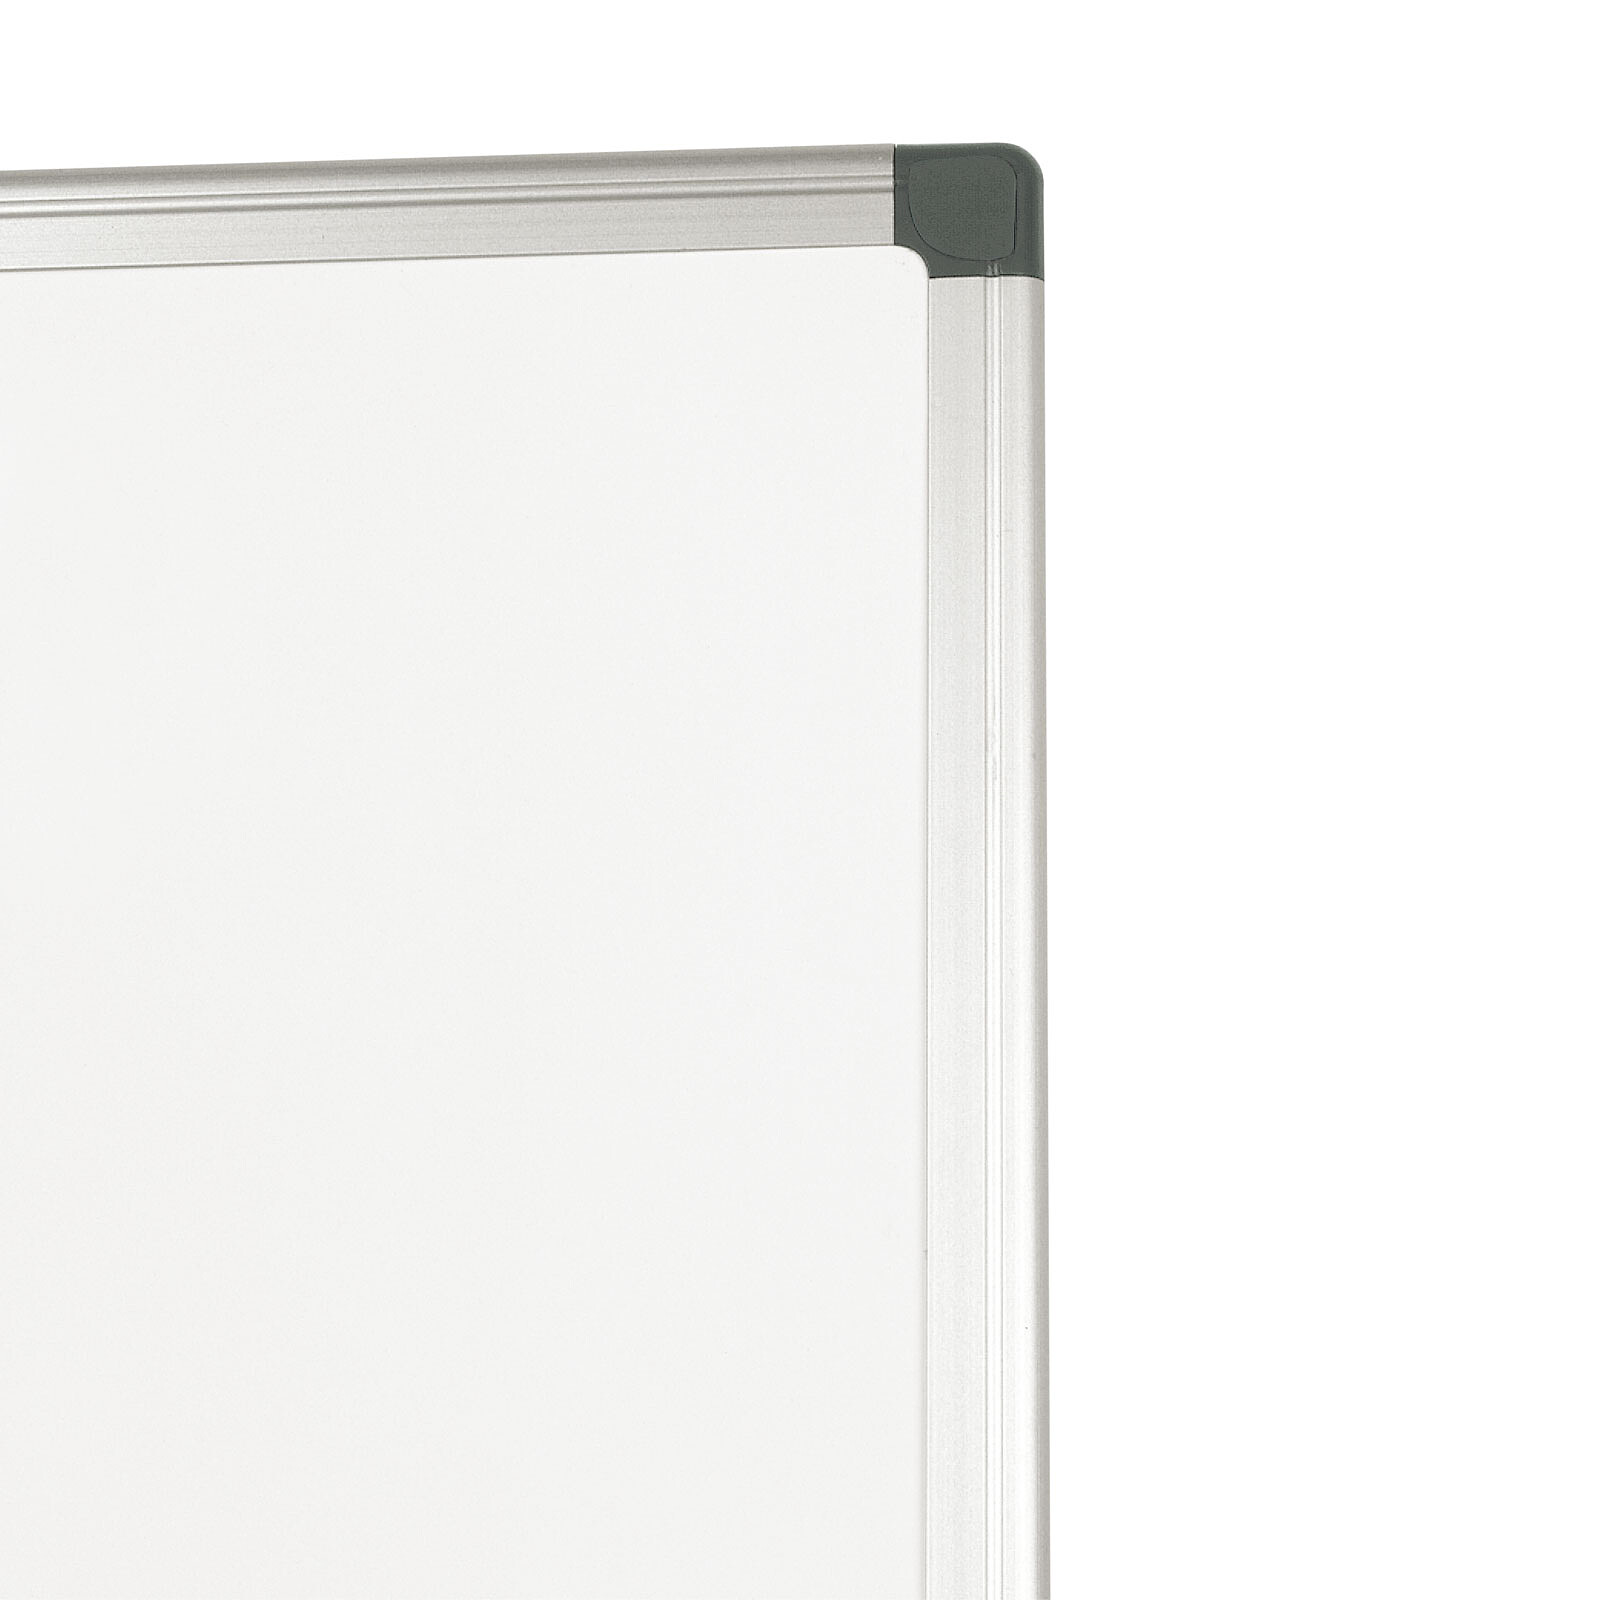 Vulcan Tableau blanc magnétique avec porte-stylo et bandes en aluminium magnétique, tableau blanc, 120 x 240 cm effaçable à sec utilisable plus de 5 ans 